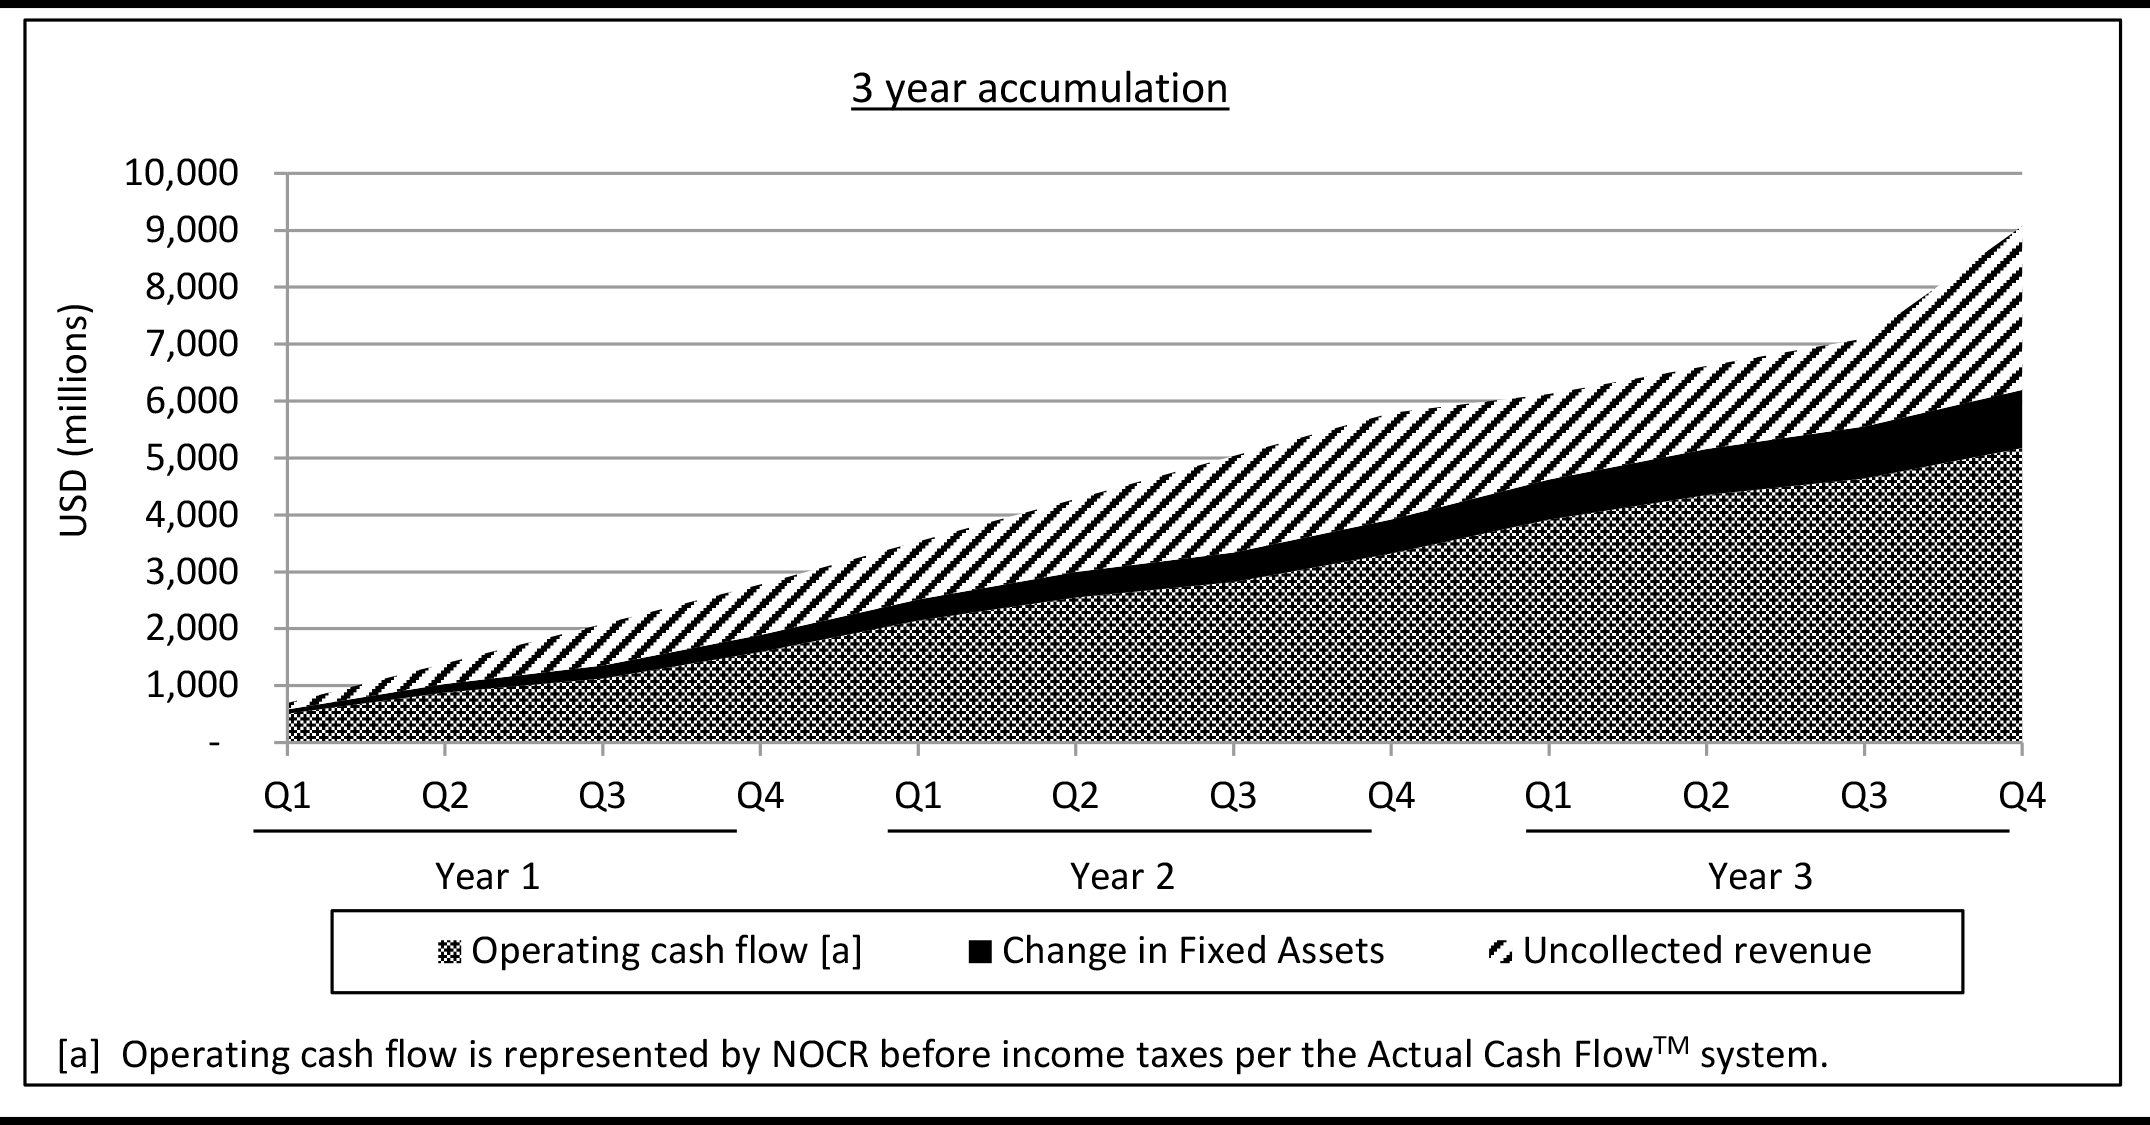 Exhibit - 3 year cash flow accumulation